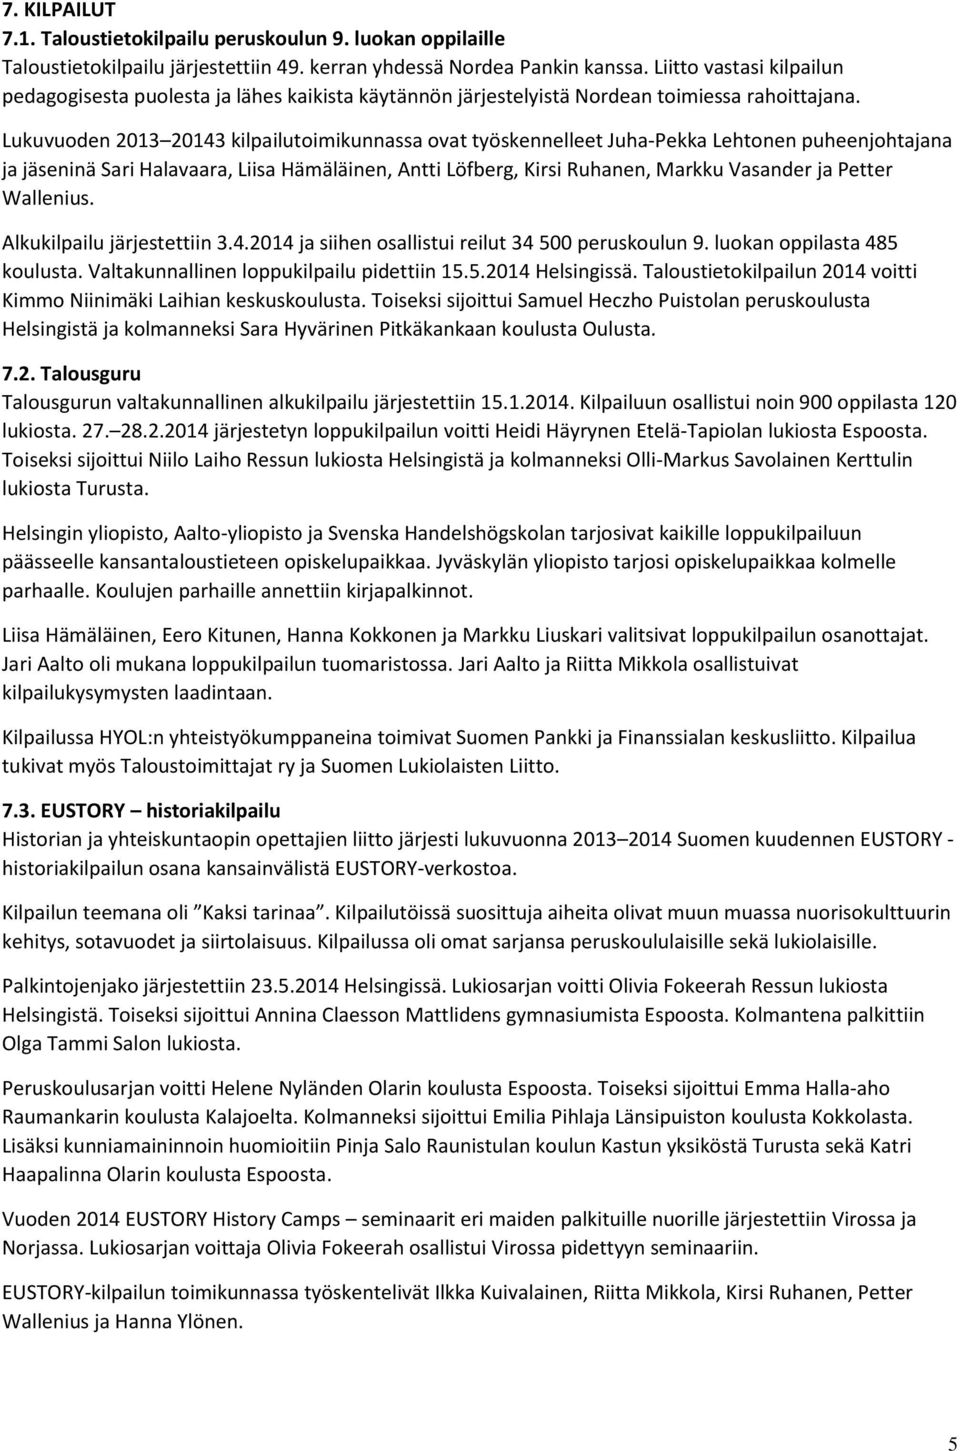 Lukuvuoden 2013 20143 kilpailutoimikunnassa ovat työskennelleet Juha-Pekka Lehtonen puheenjohtajana ja jäseninä Sari Halavaara, Liisa Hämäläinen, Antti Löfberg, Kirsi Ruhanen, Markku Vasander ja